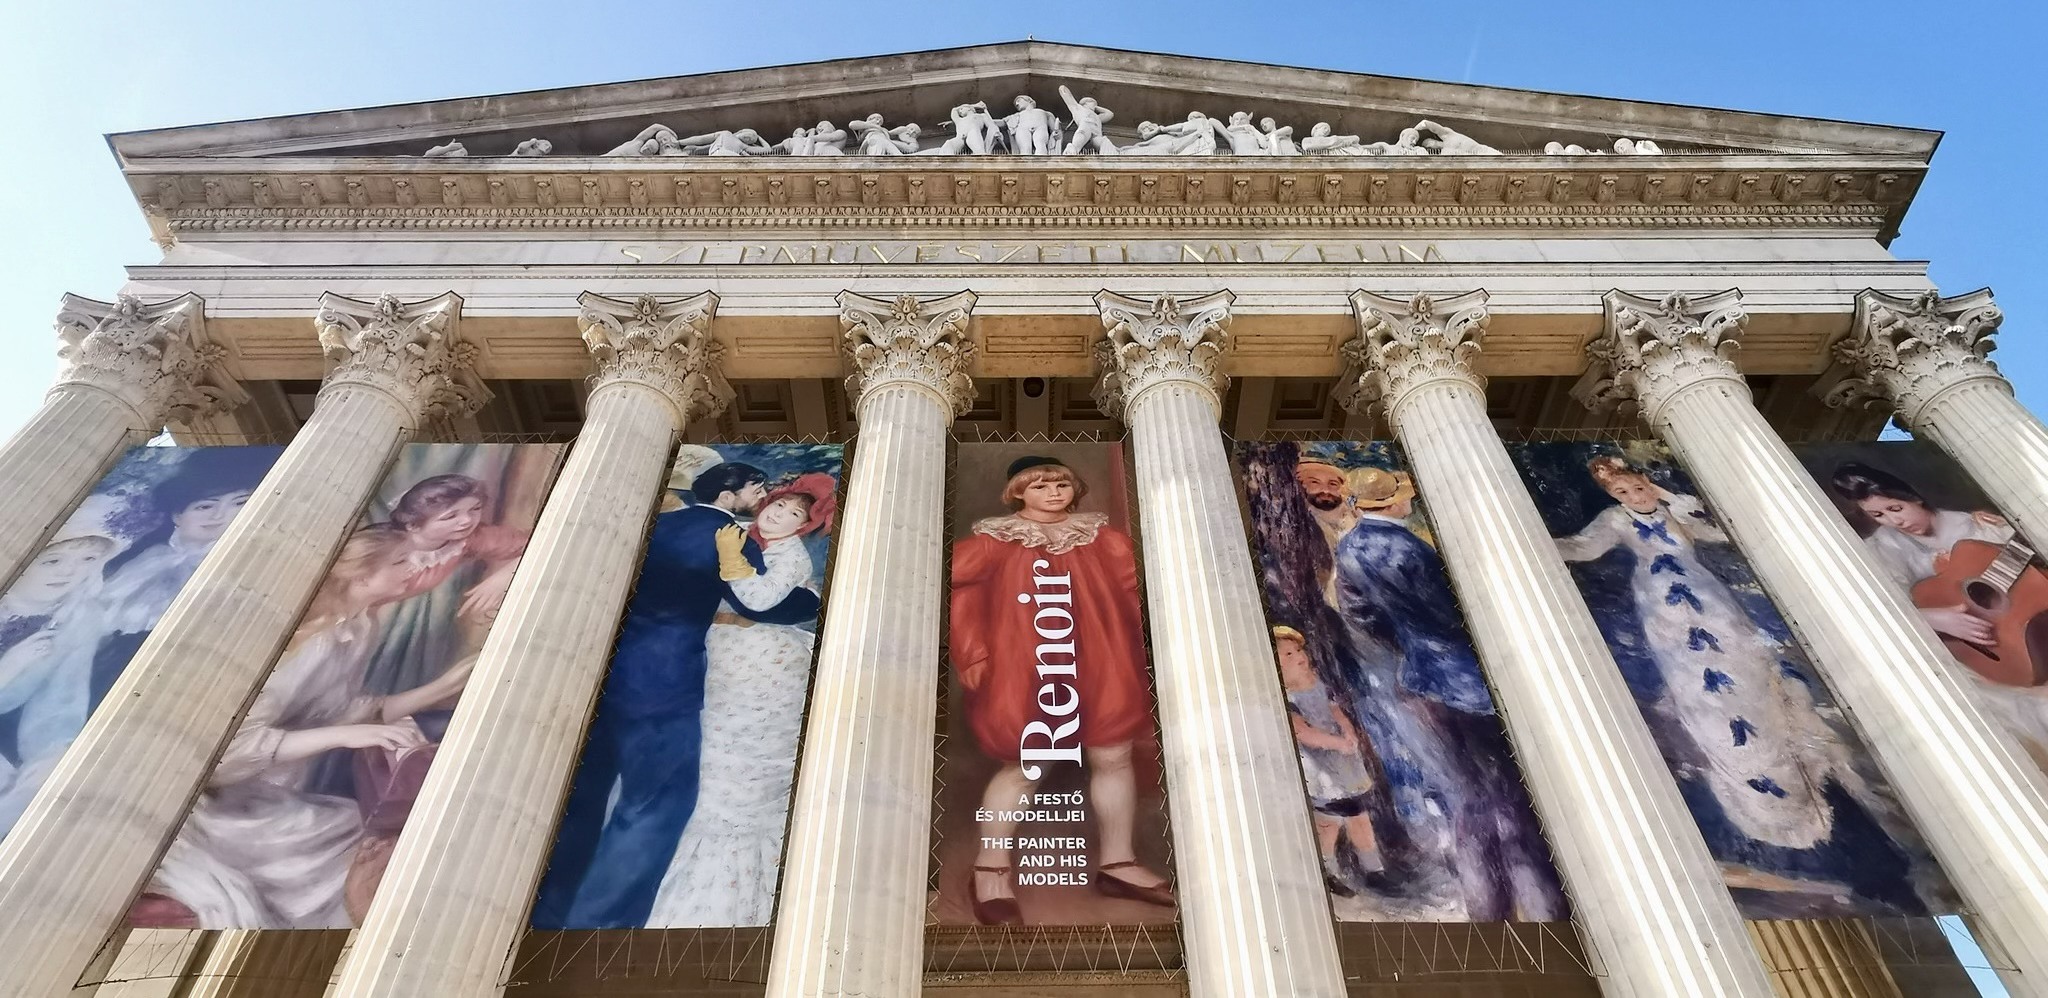 Nagy népszerűségnek örvendett a budapesti Renoir kiállítás, közel 200 ezer látogatóval